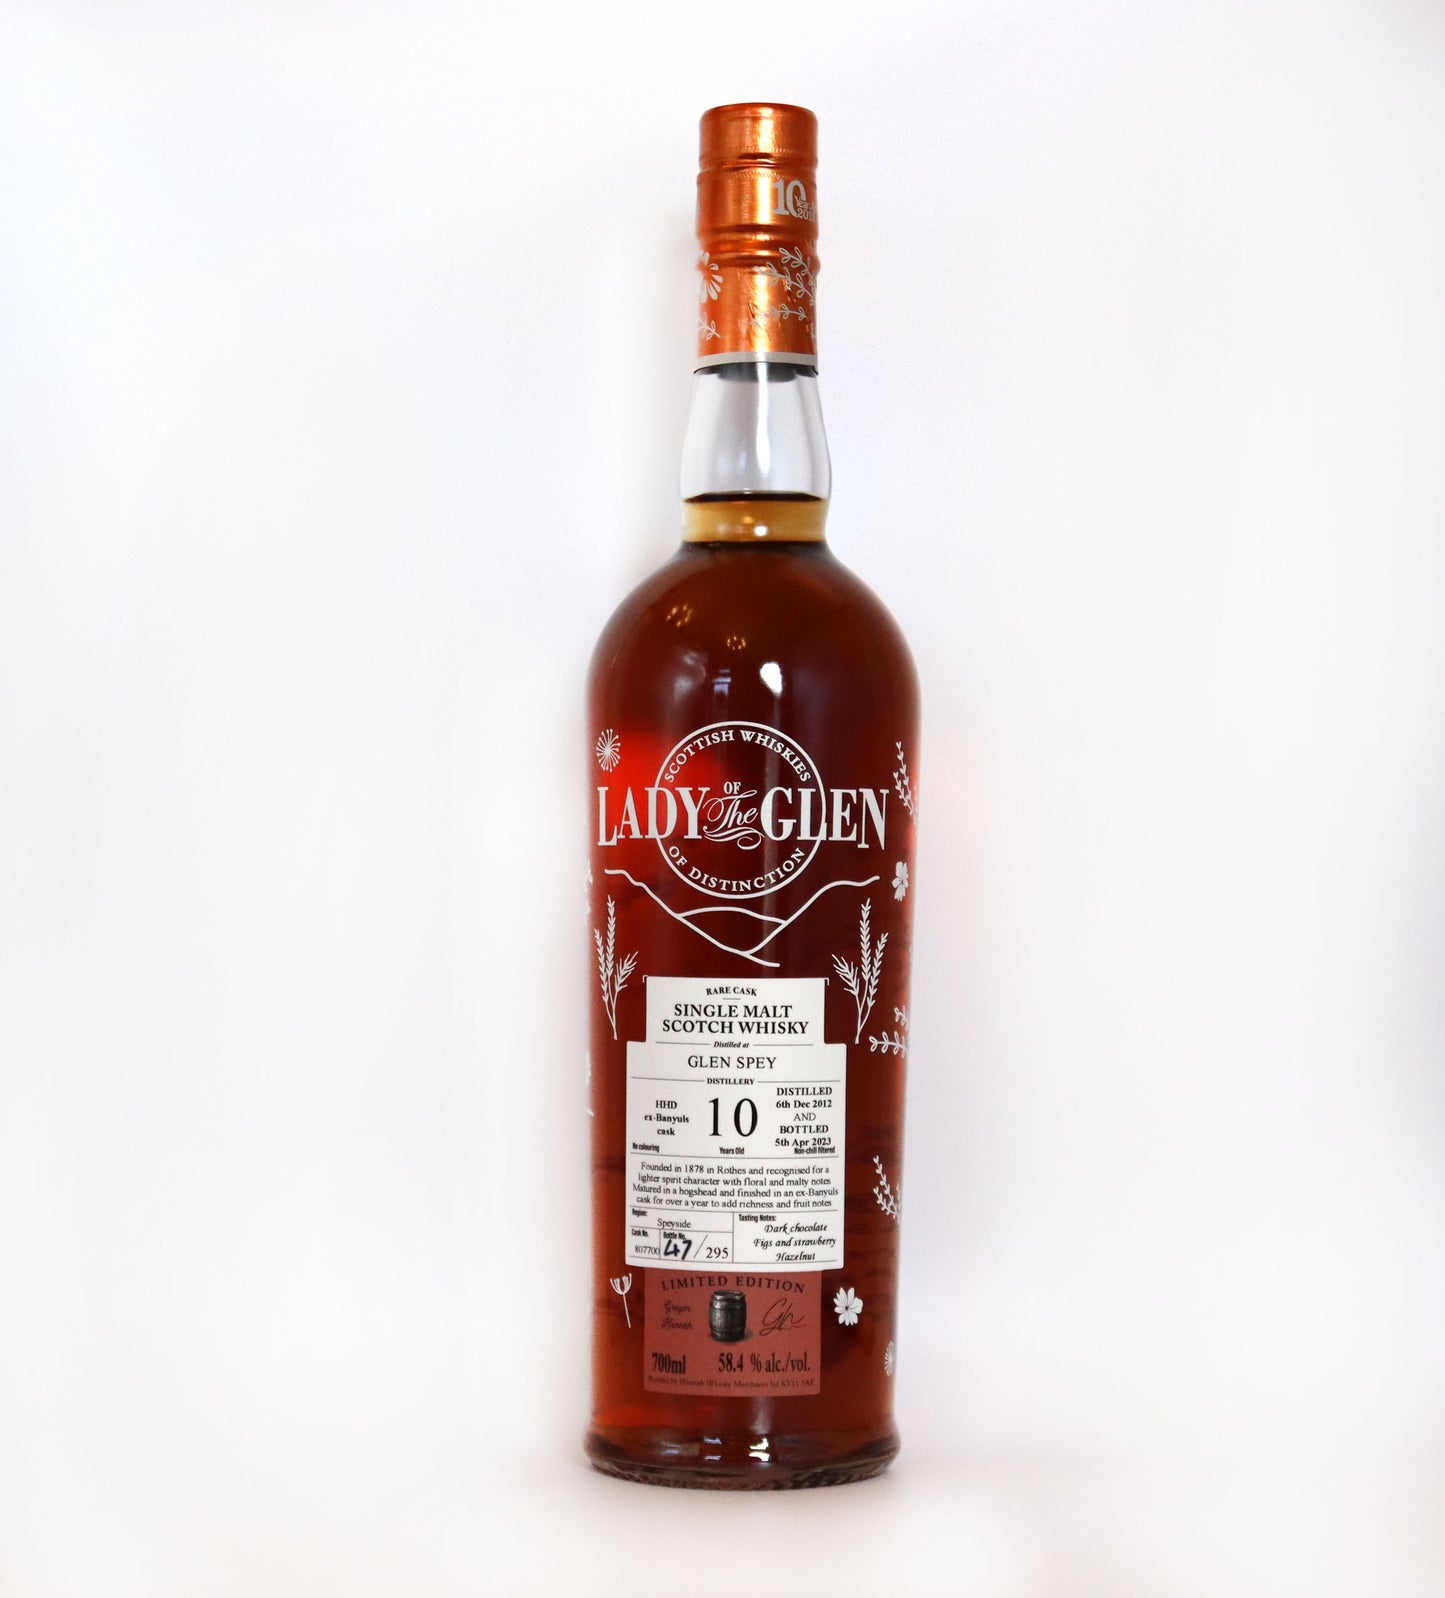 Lady of the Glen - Glen Spey 10 years old - Single Malt Scotch Whisky